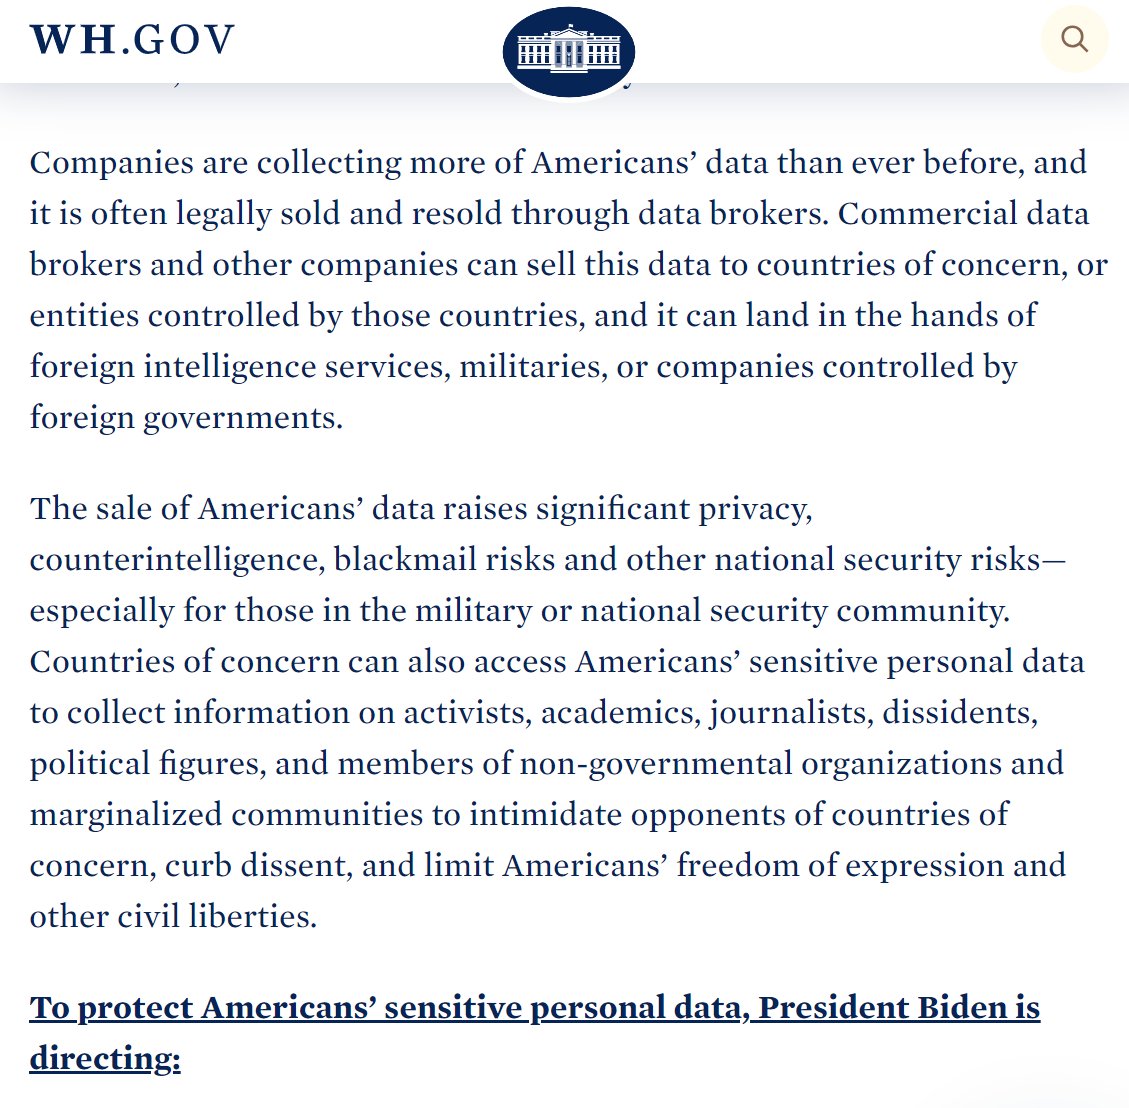 Prière de ne pas rire. La Maison Blanche décide de bloquer le transfert de données des Américains vers certains pays tiers parce que les données sensibles des Américains c'est mieux que ça reste aux USA (par contre on veut bien celles des Européens) whitehouse.gov/briefing-room/…